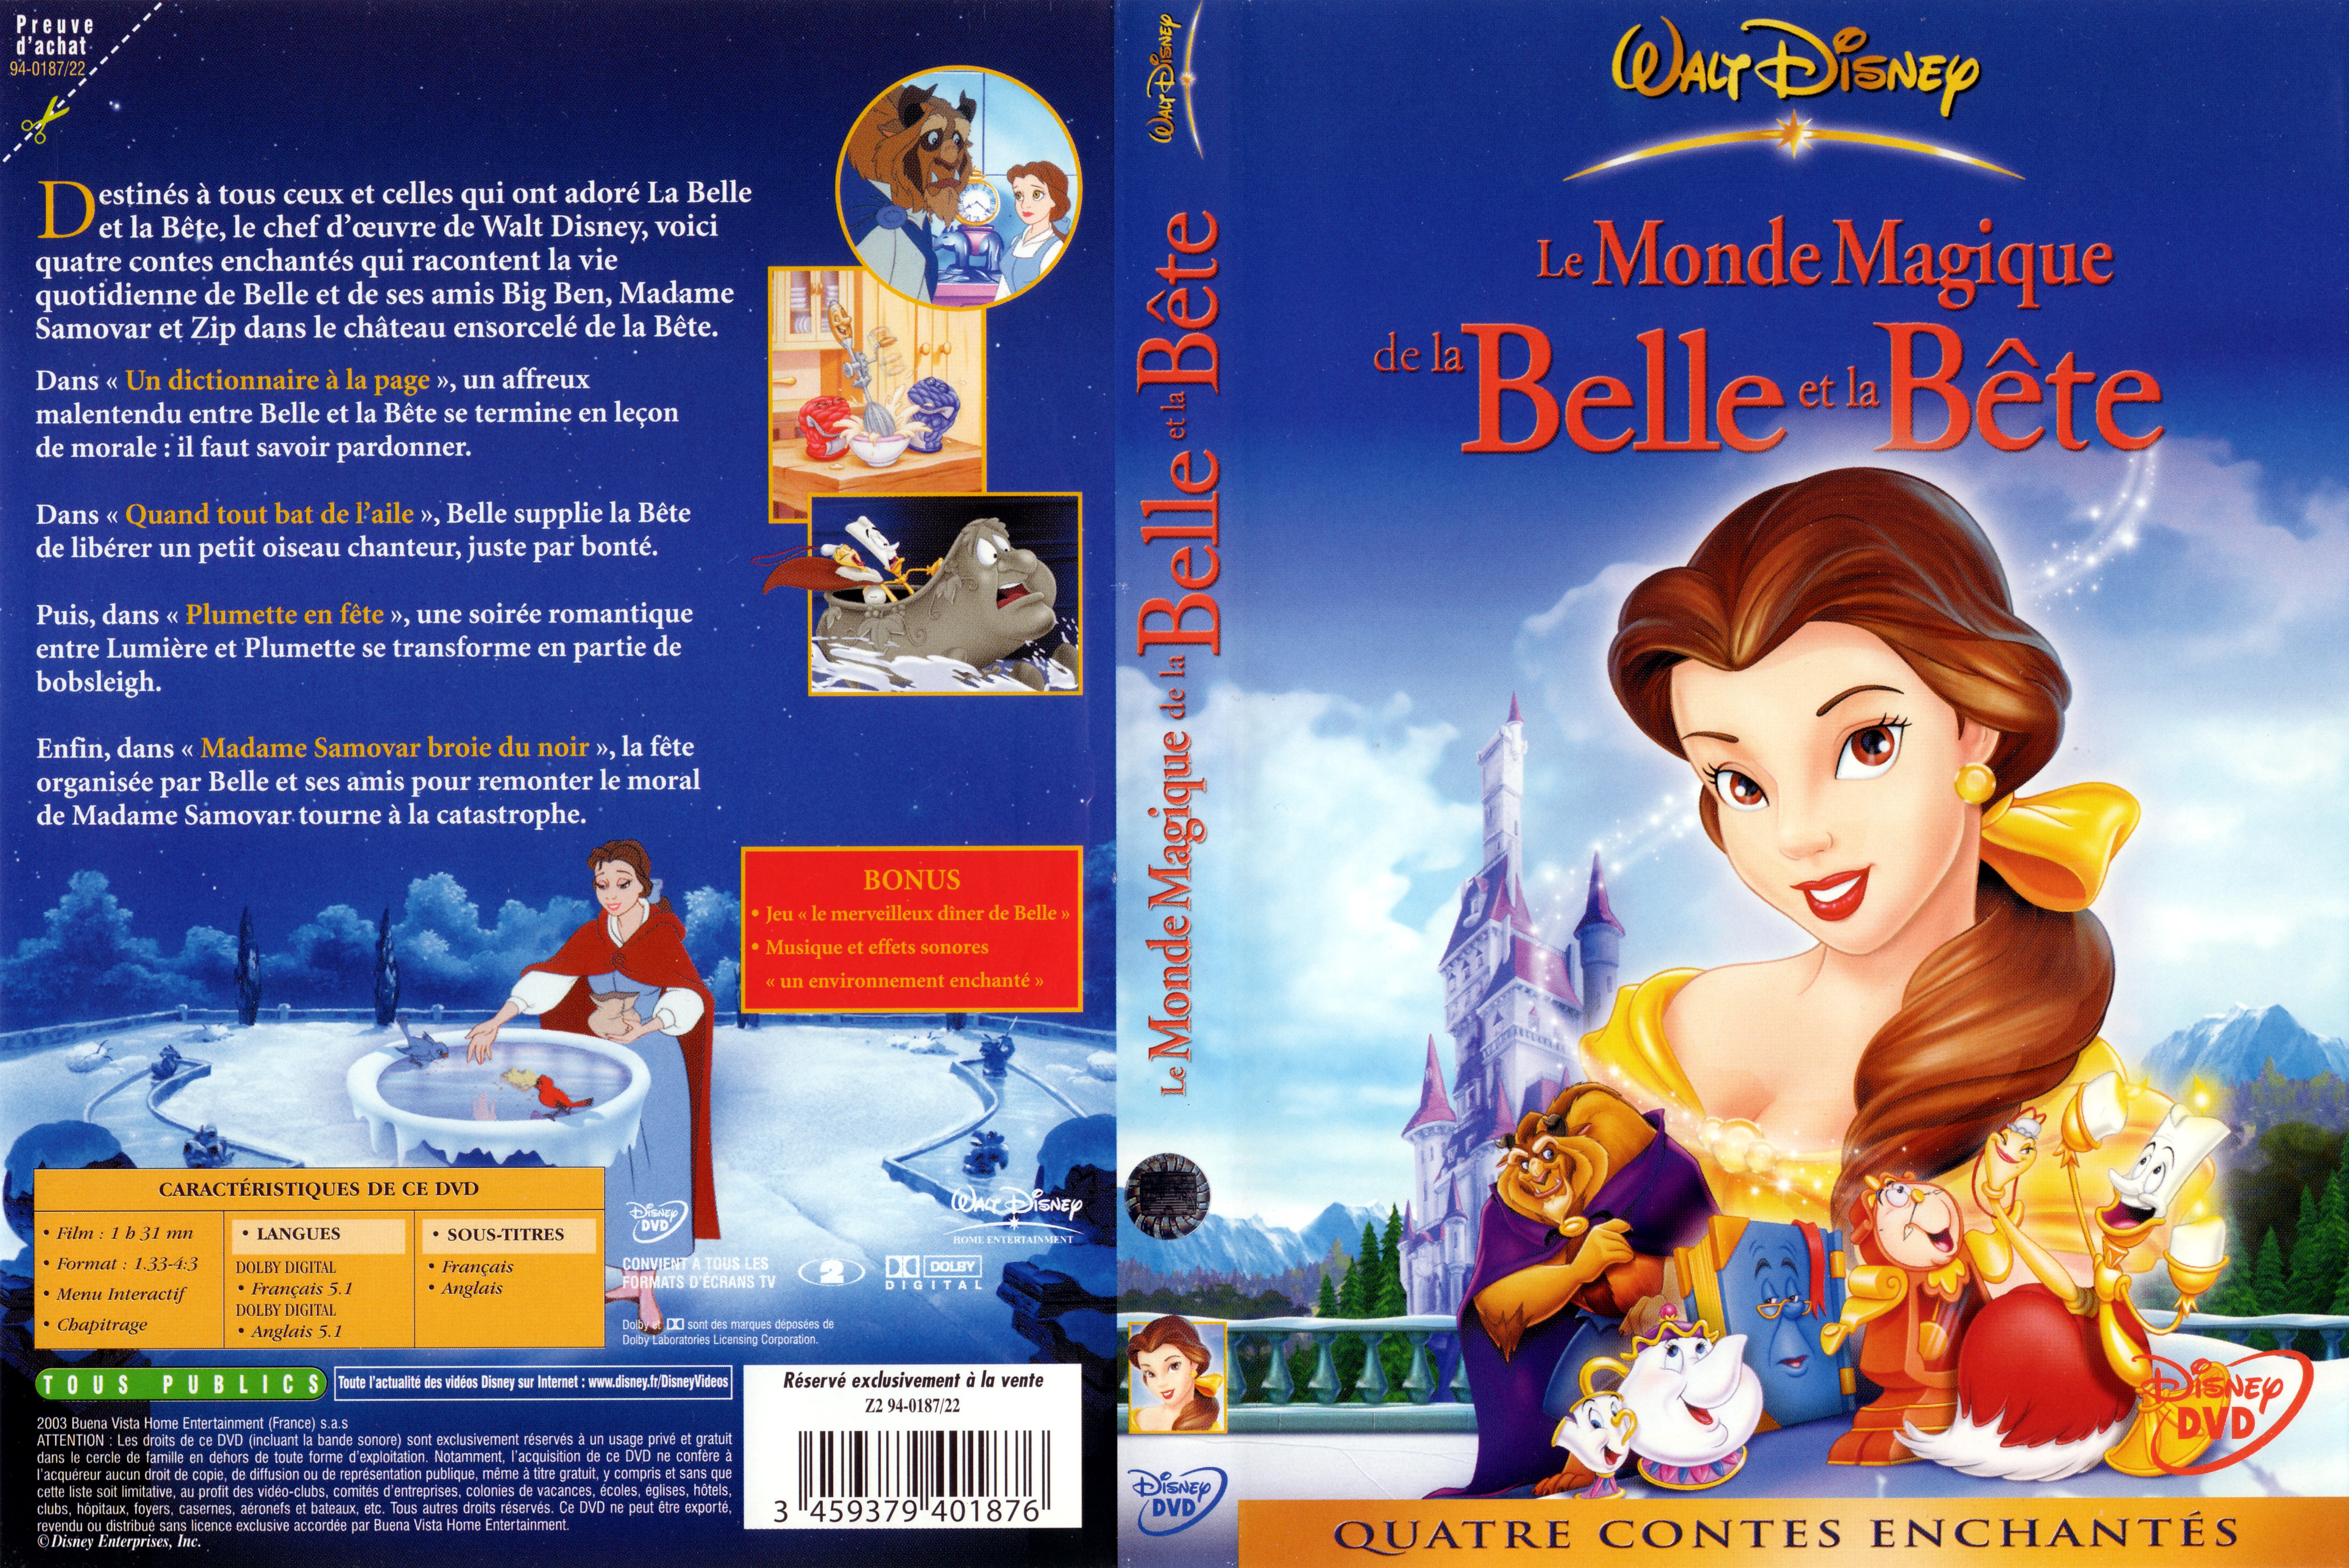 Jaquette DVD Le monde magique de la belle et la bete